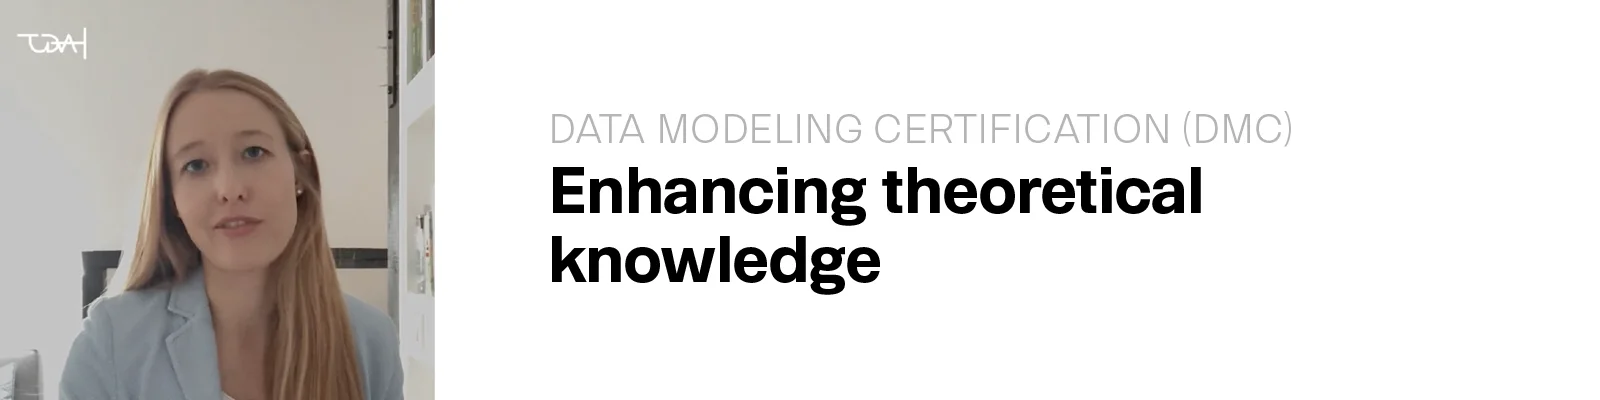 TEDAMOH - Data Modeling Certification (DMC)